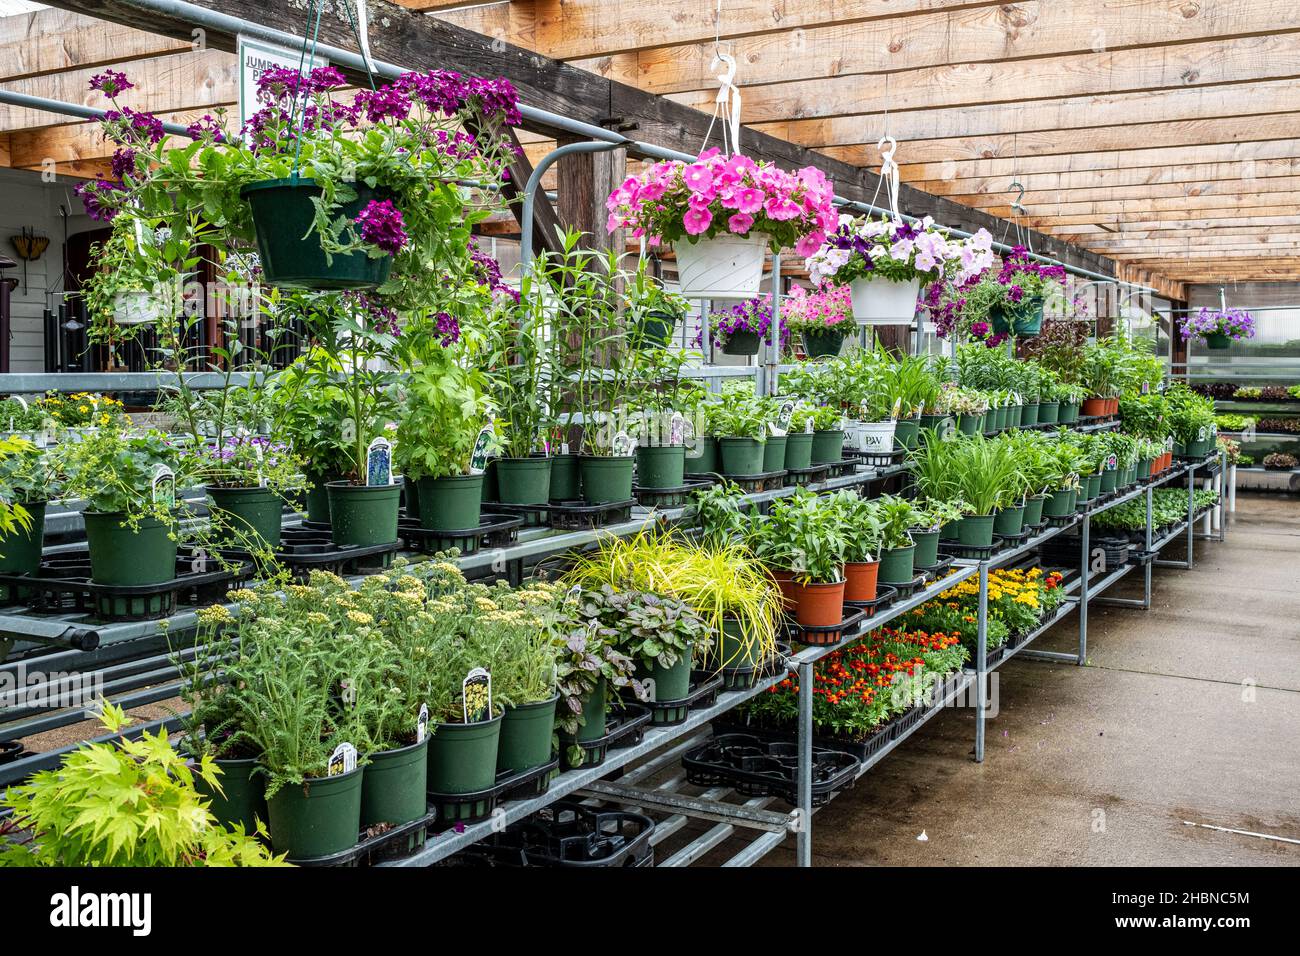 Die Hardwick Farmers Coop in Hardwick, Massachusetts, verkauft Blumen,  Pflanzen und landwirtschaftliche Produkte Stockfotografie - Alamy